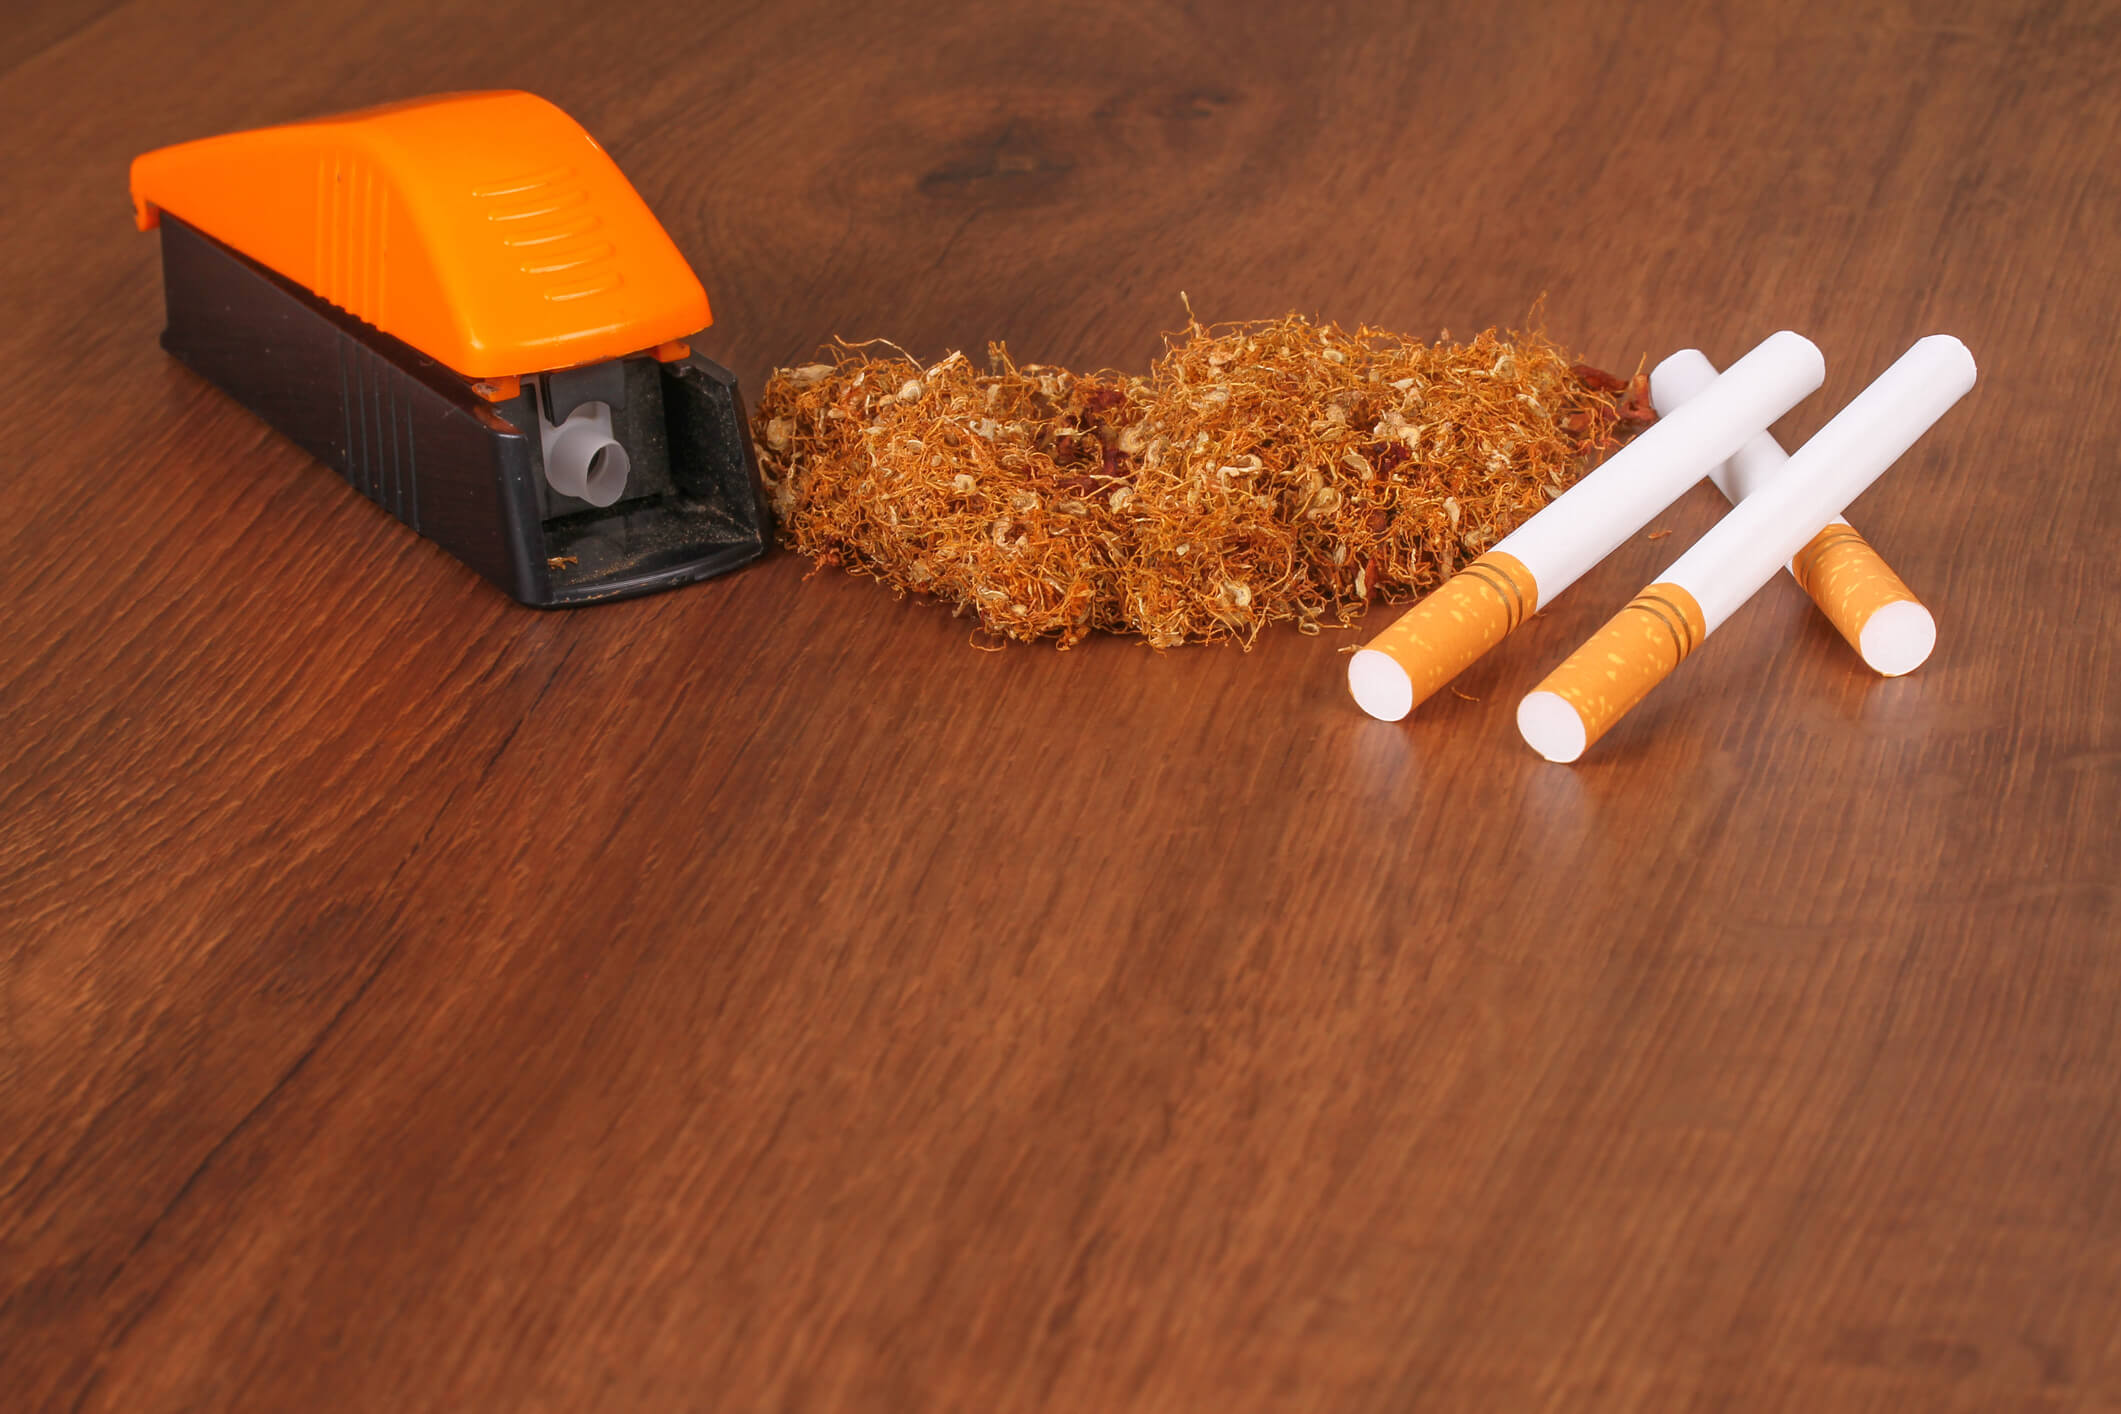 Stopfmaschine mit selbstgedrehten Zigaretten